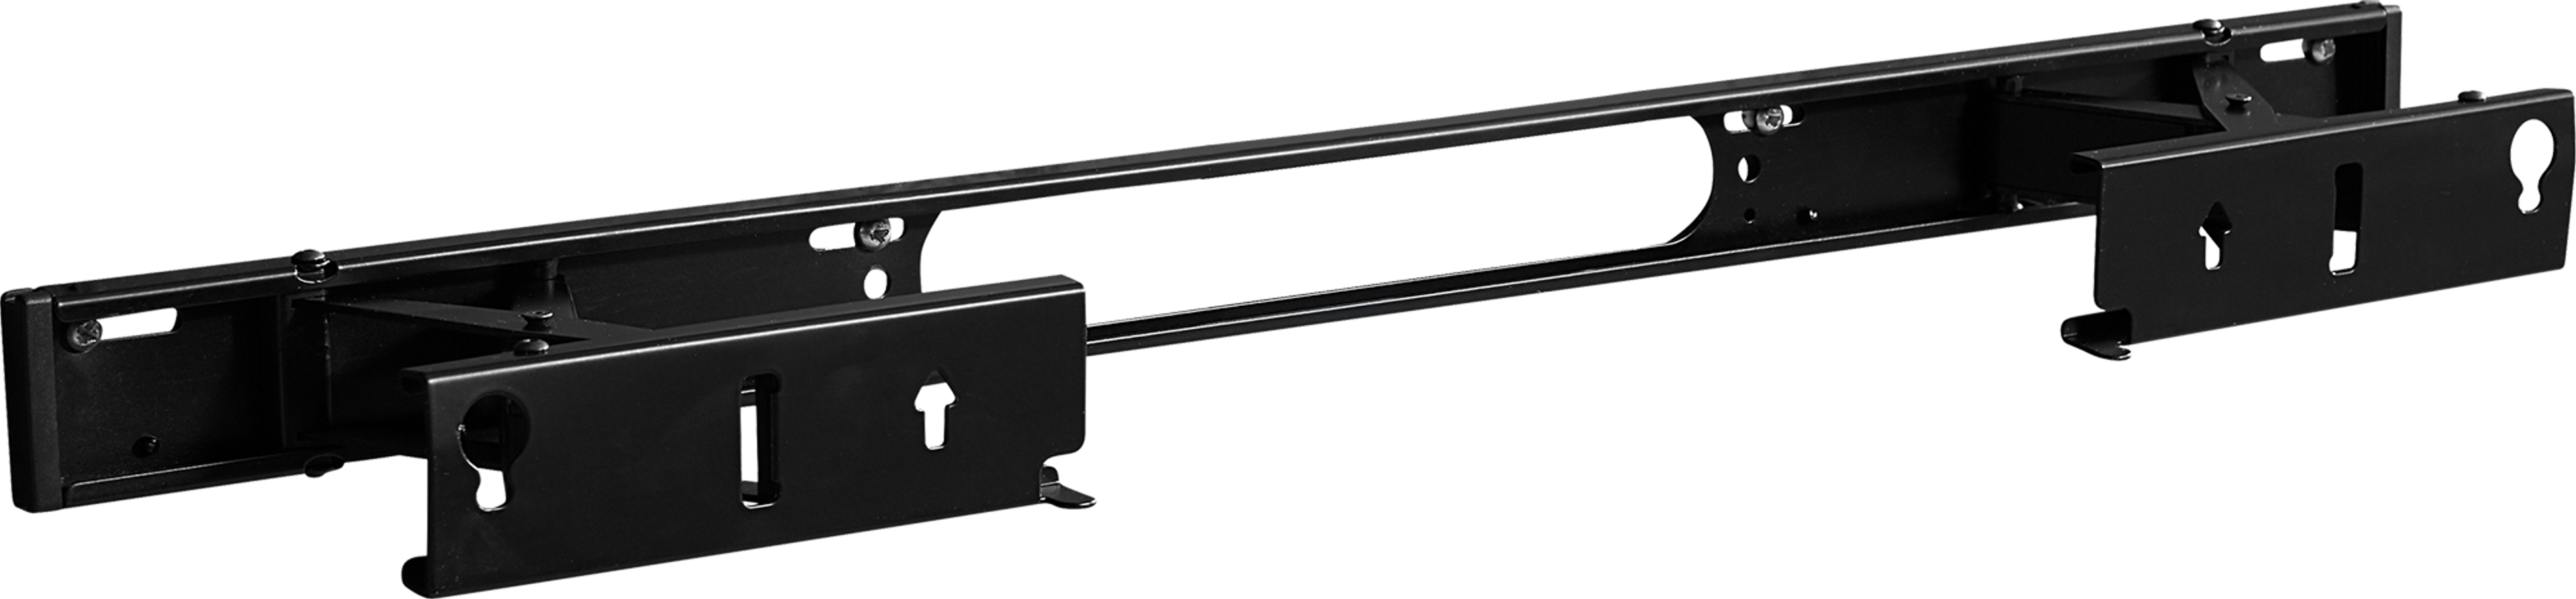 Sanus tv-beugel voor Arc gemonteerd zwart